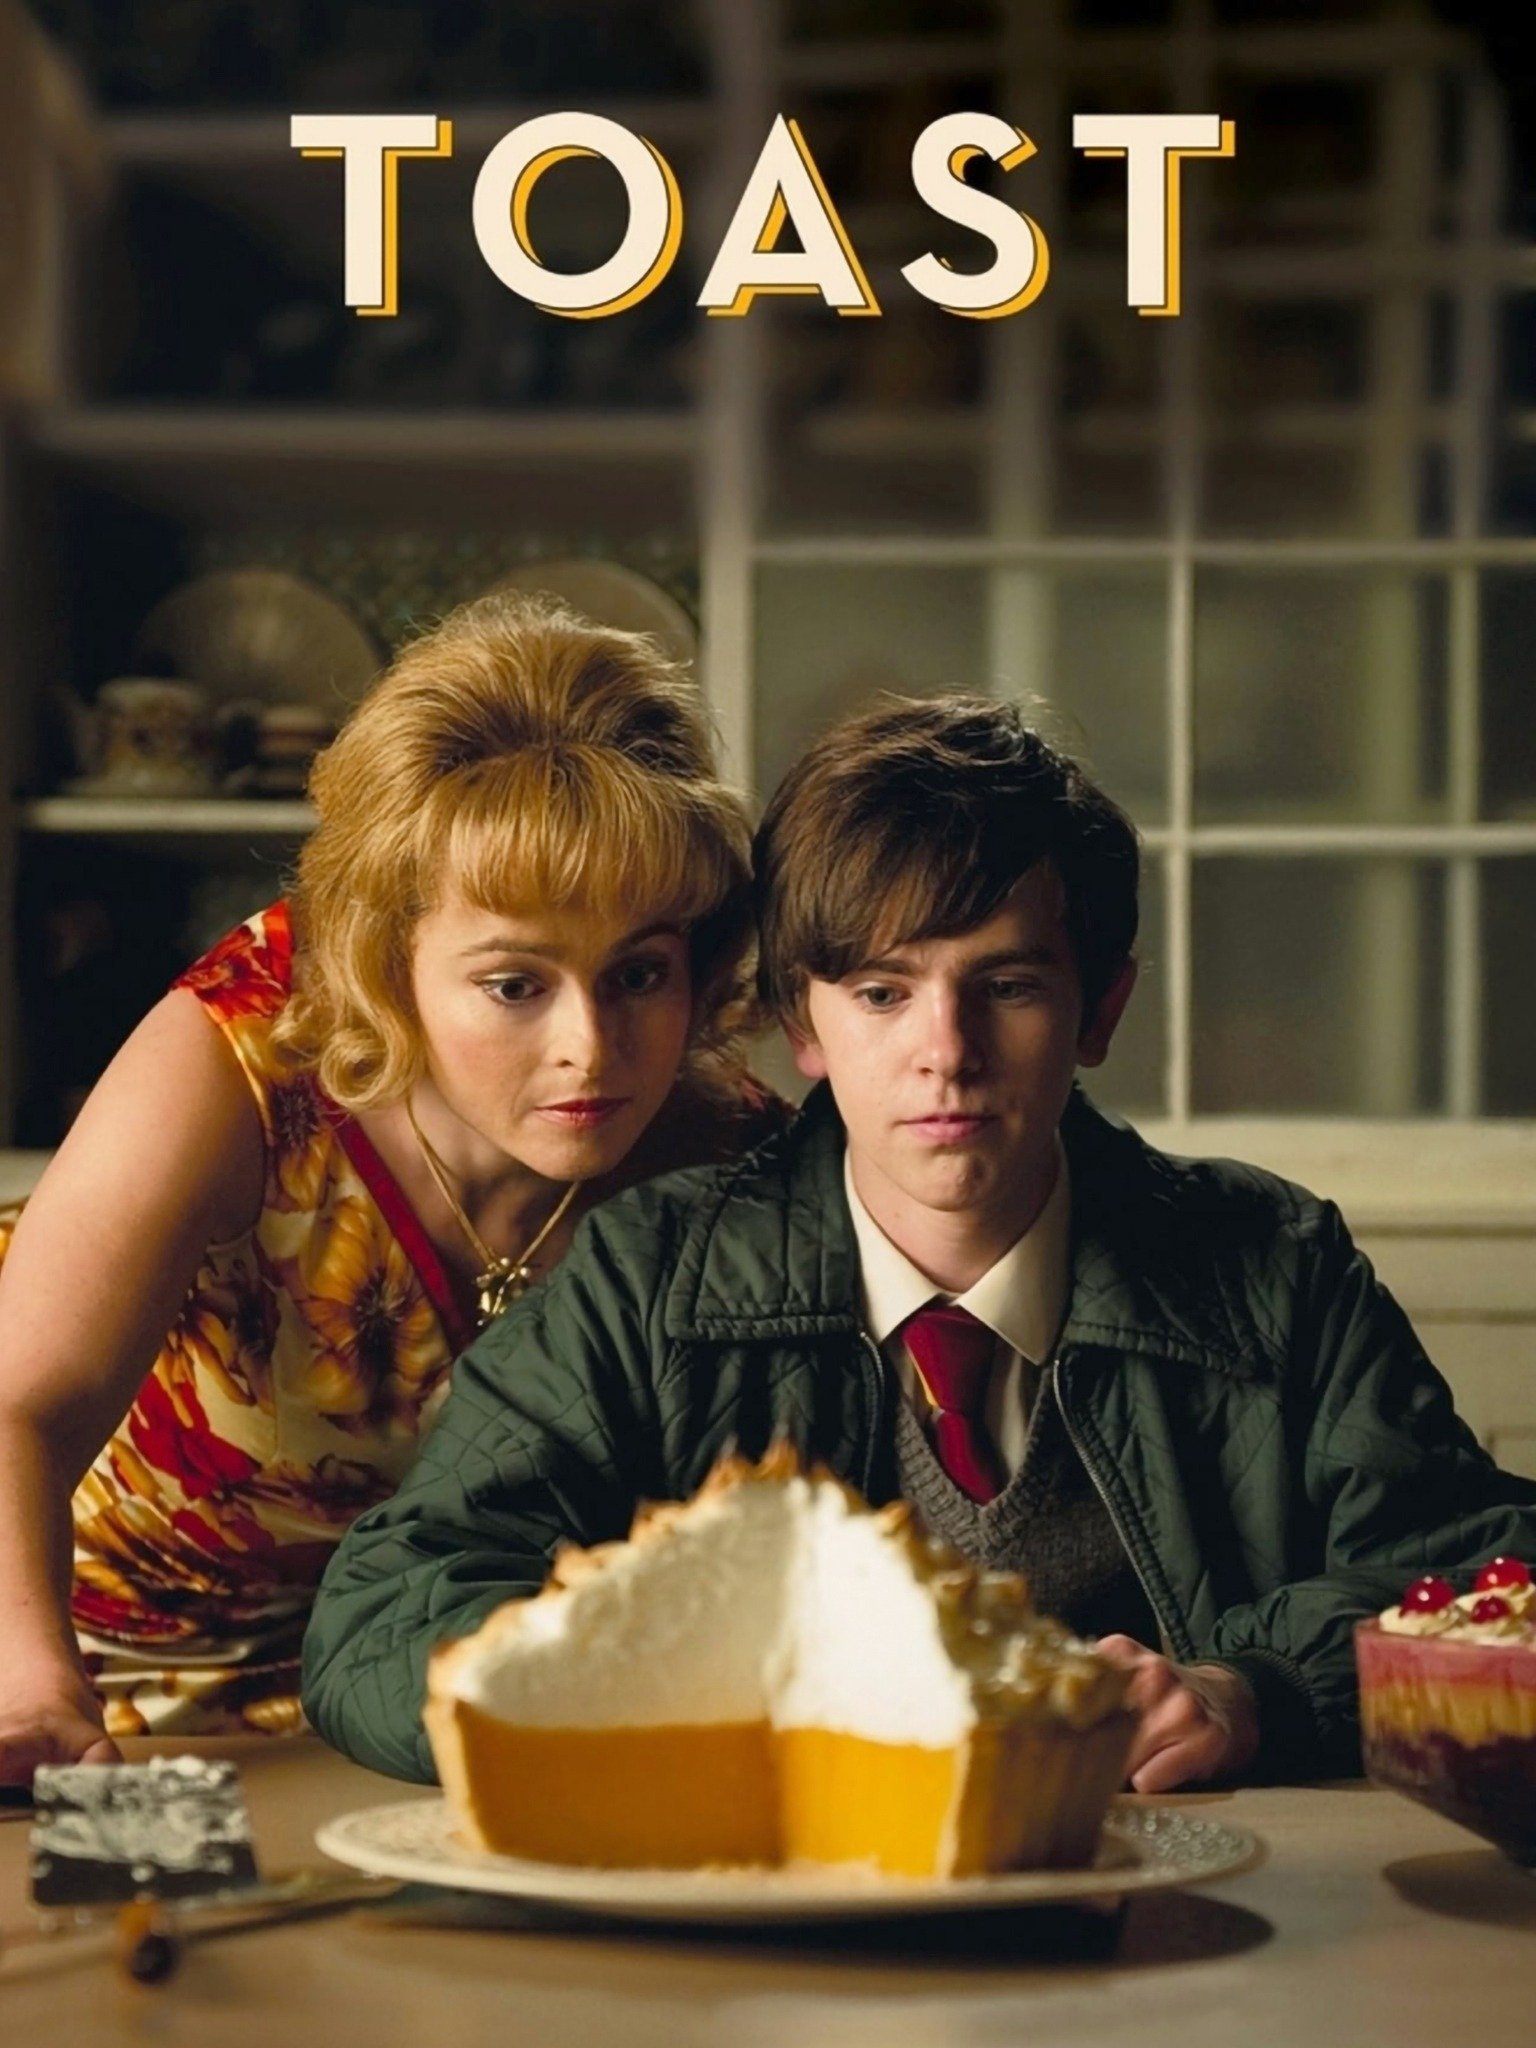 Toast 2010 Rotten Tomatoes